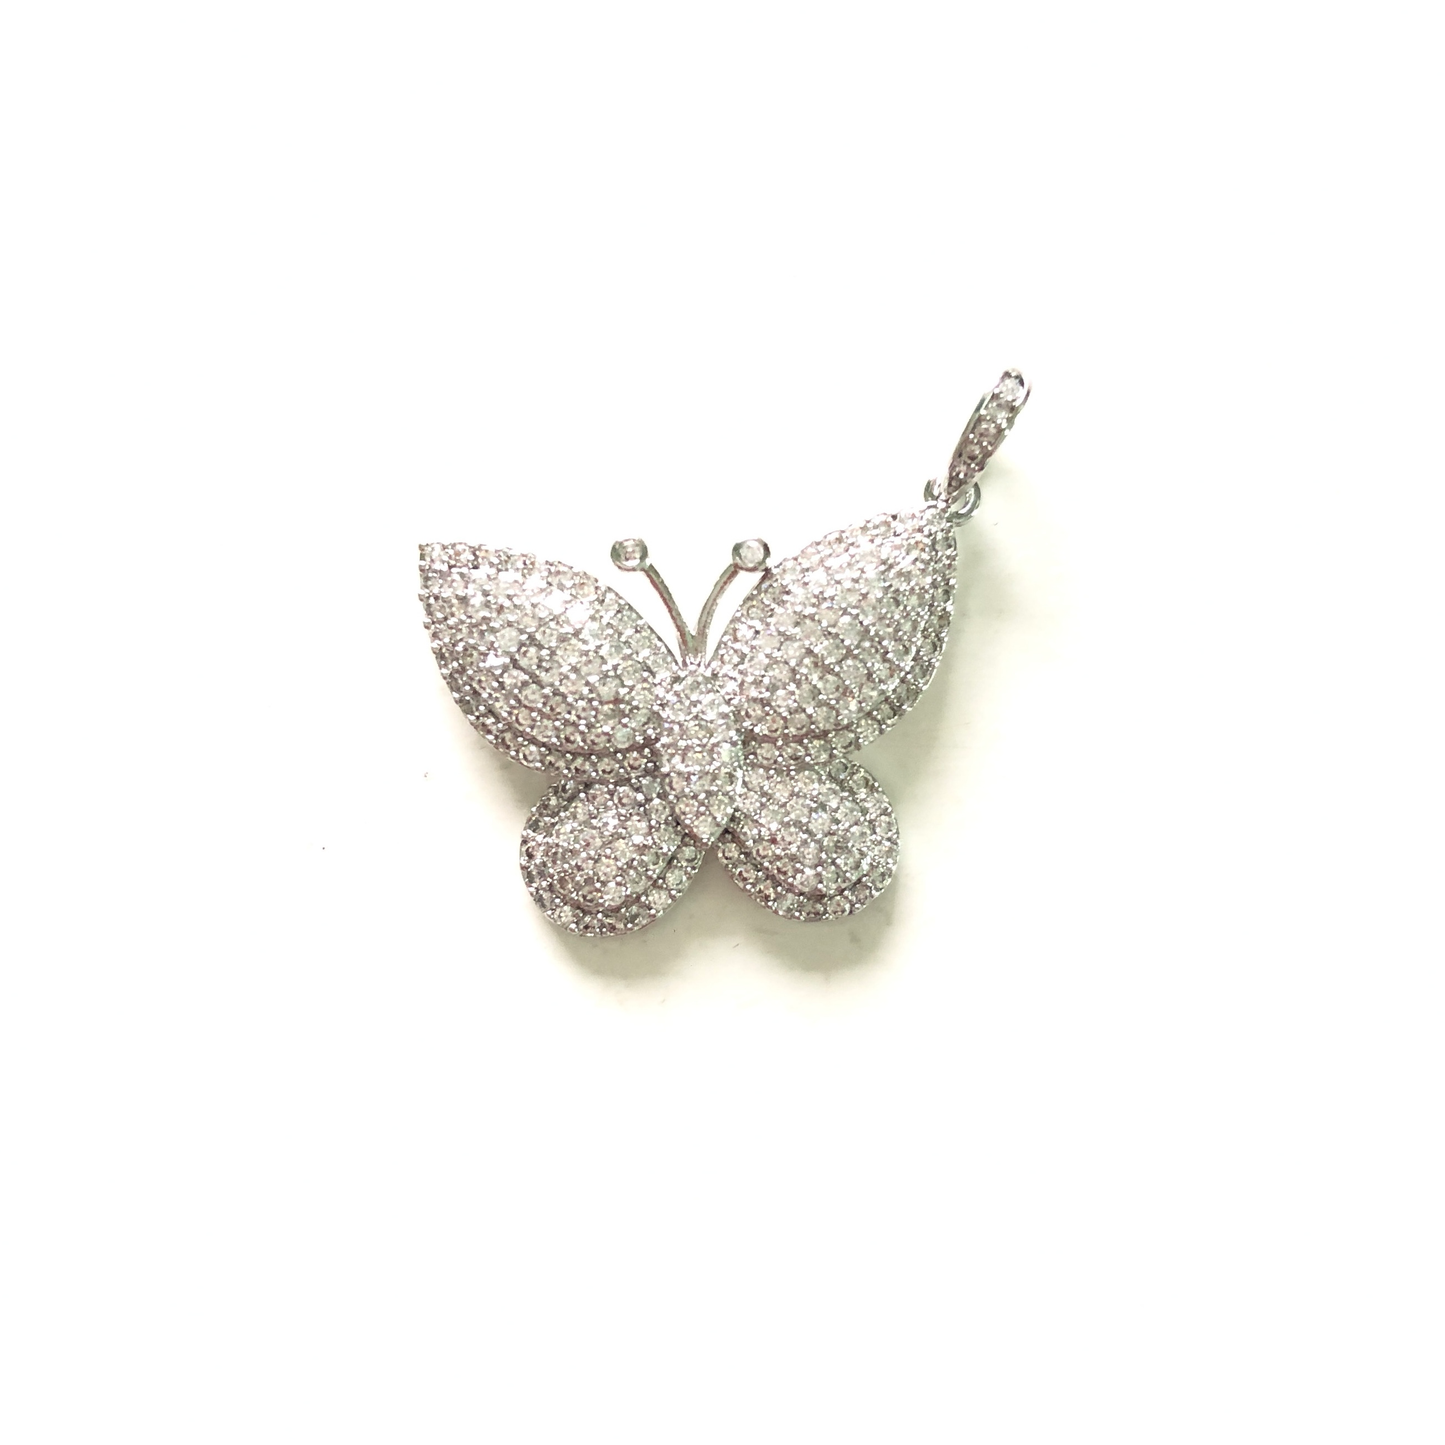 10pcs/lot 29.5*20mm CZ Paved Butterfly Charms Silver CZ Paved Charms Butterflies On Sale Charms Beads Beyond